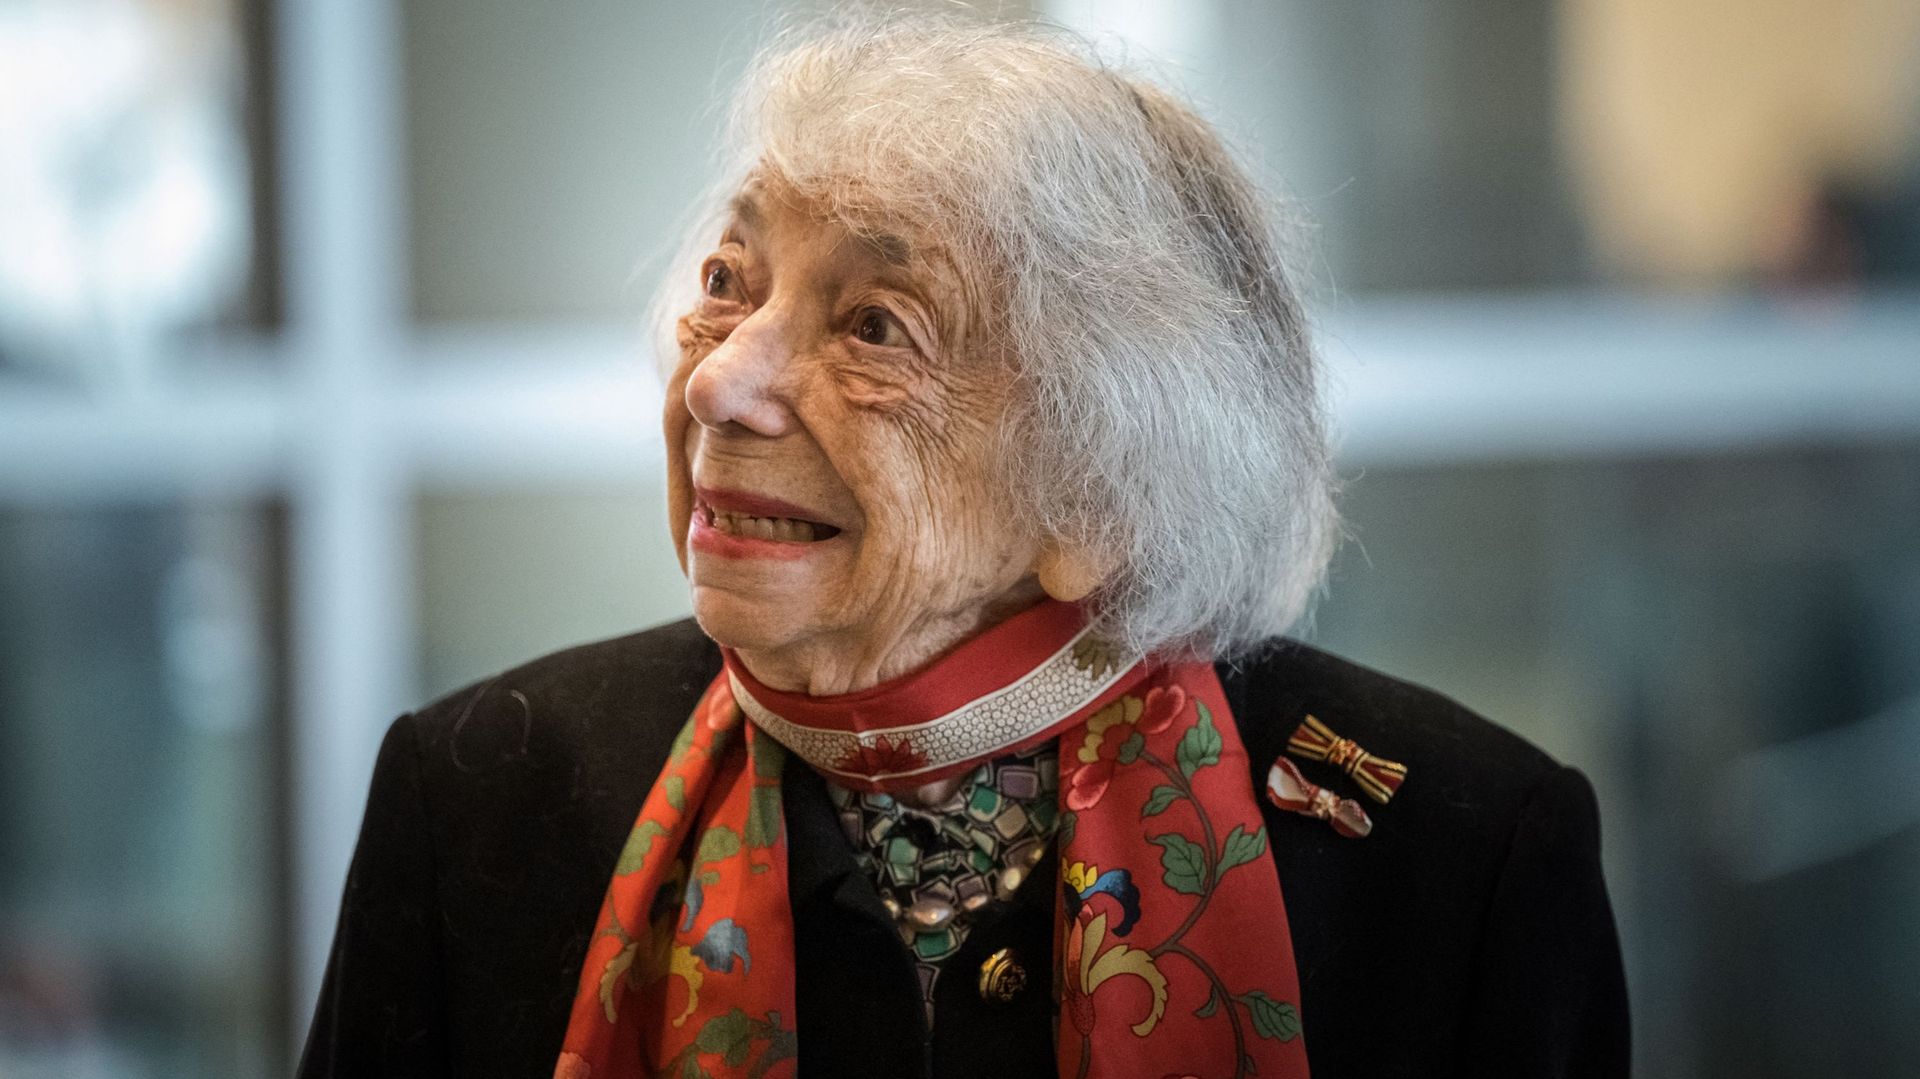 Margot Friedlander, 101 ans, survivante de l’Holocauste, est vue lors de la cérémonie annuelle à la mémoire des victimes et des survivants de l’Holocauste dans la salle plénière du Bundestag, la chambre basse du parlement allemand, à Berlin, le 27 janvier